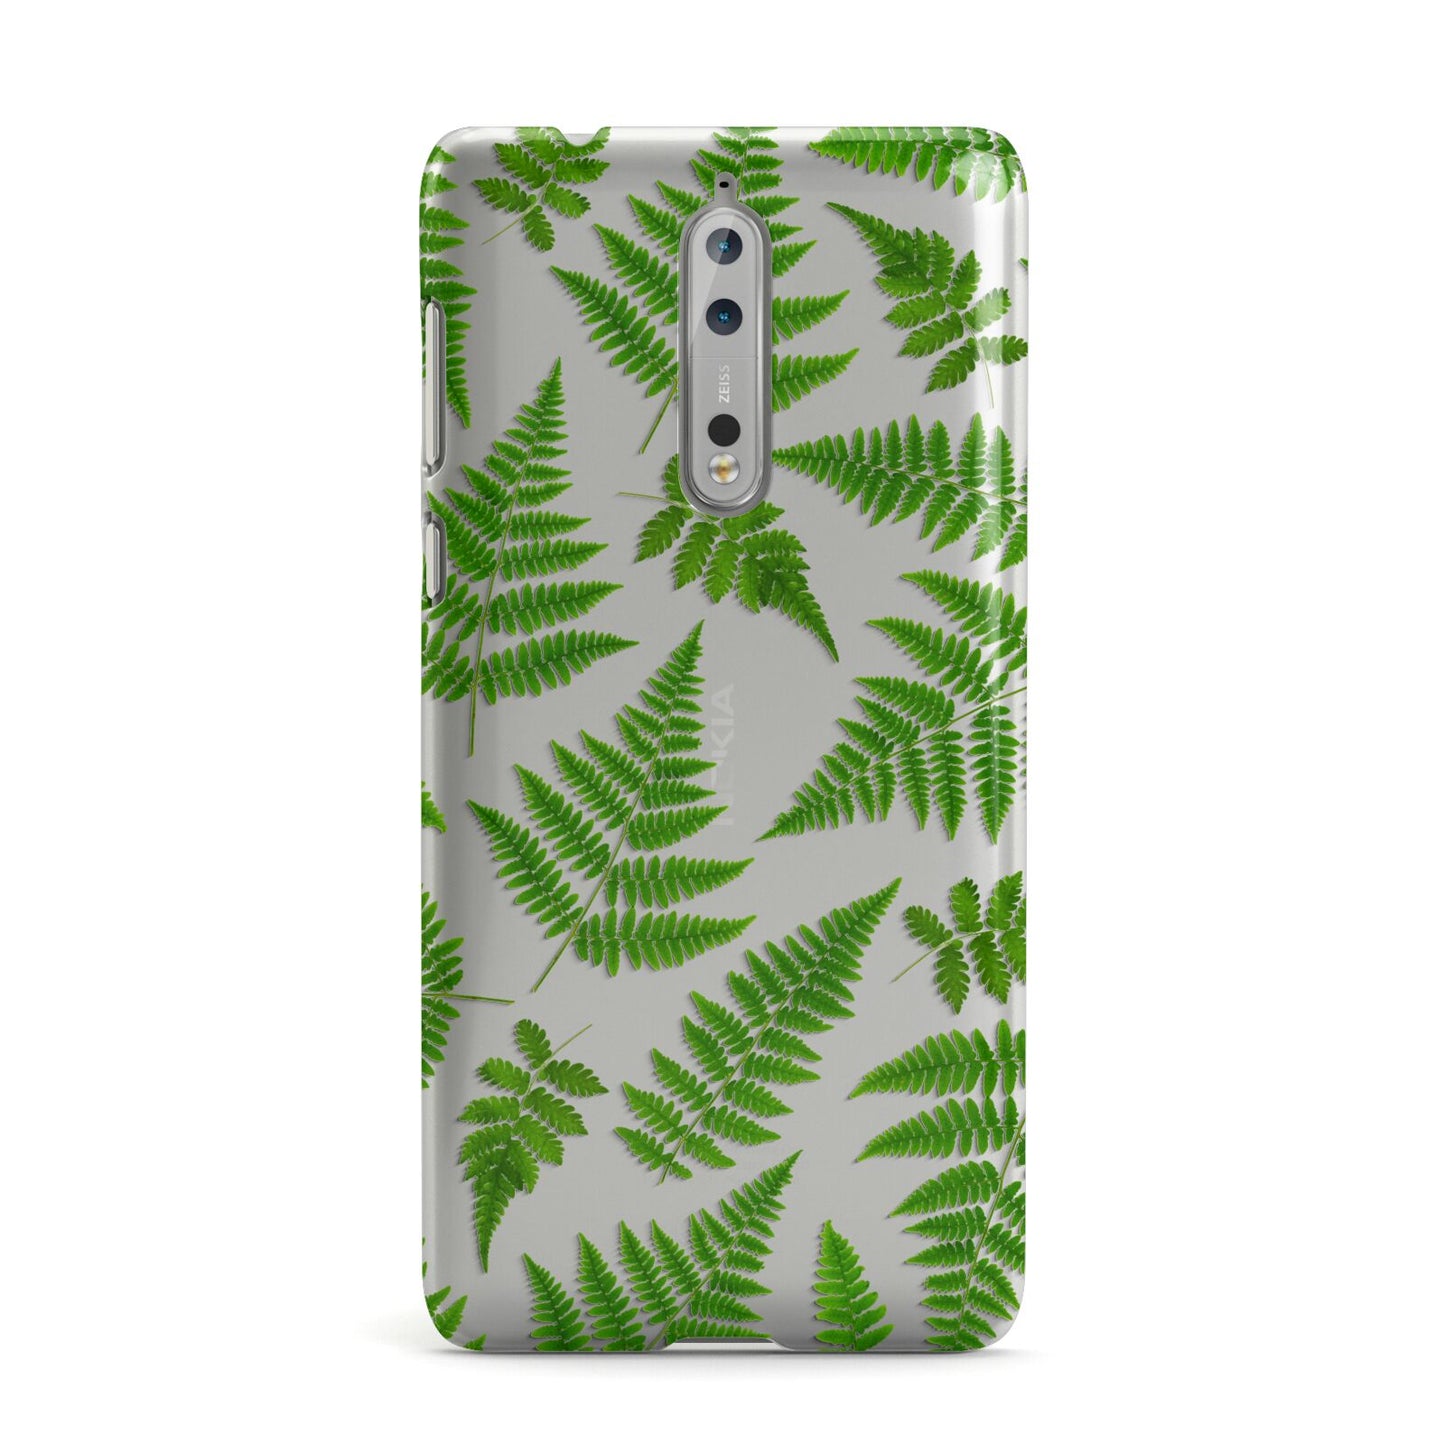 Fern Leaf Nokia Case